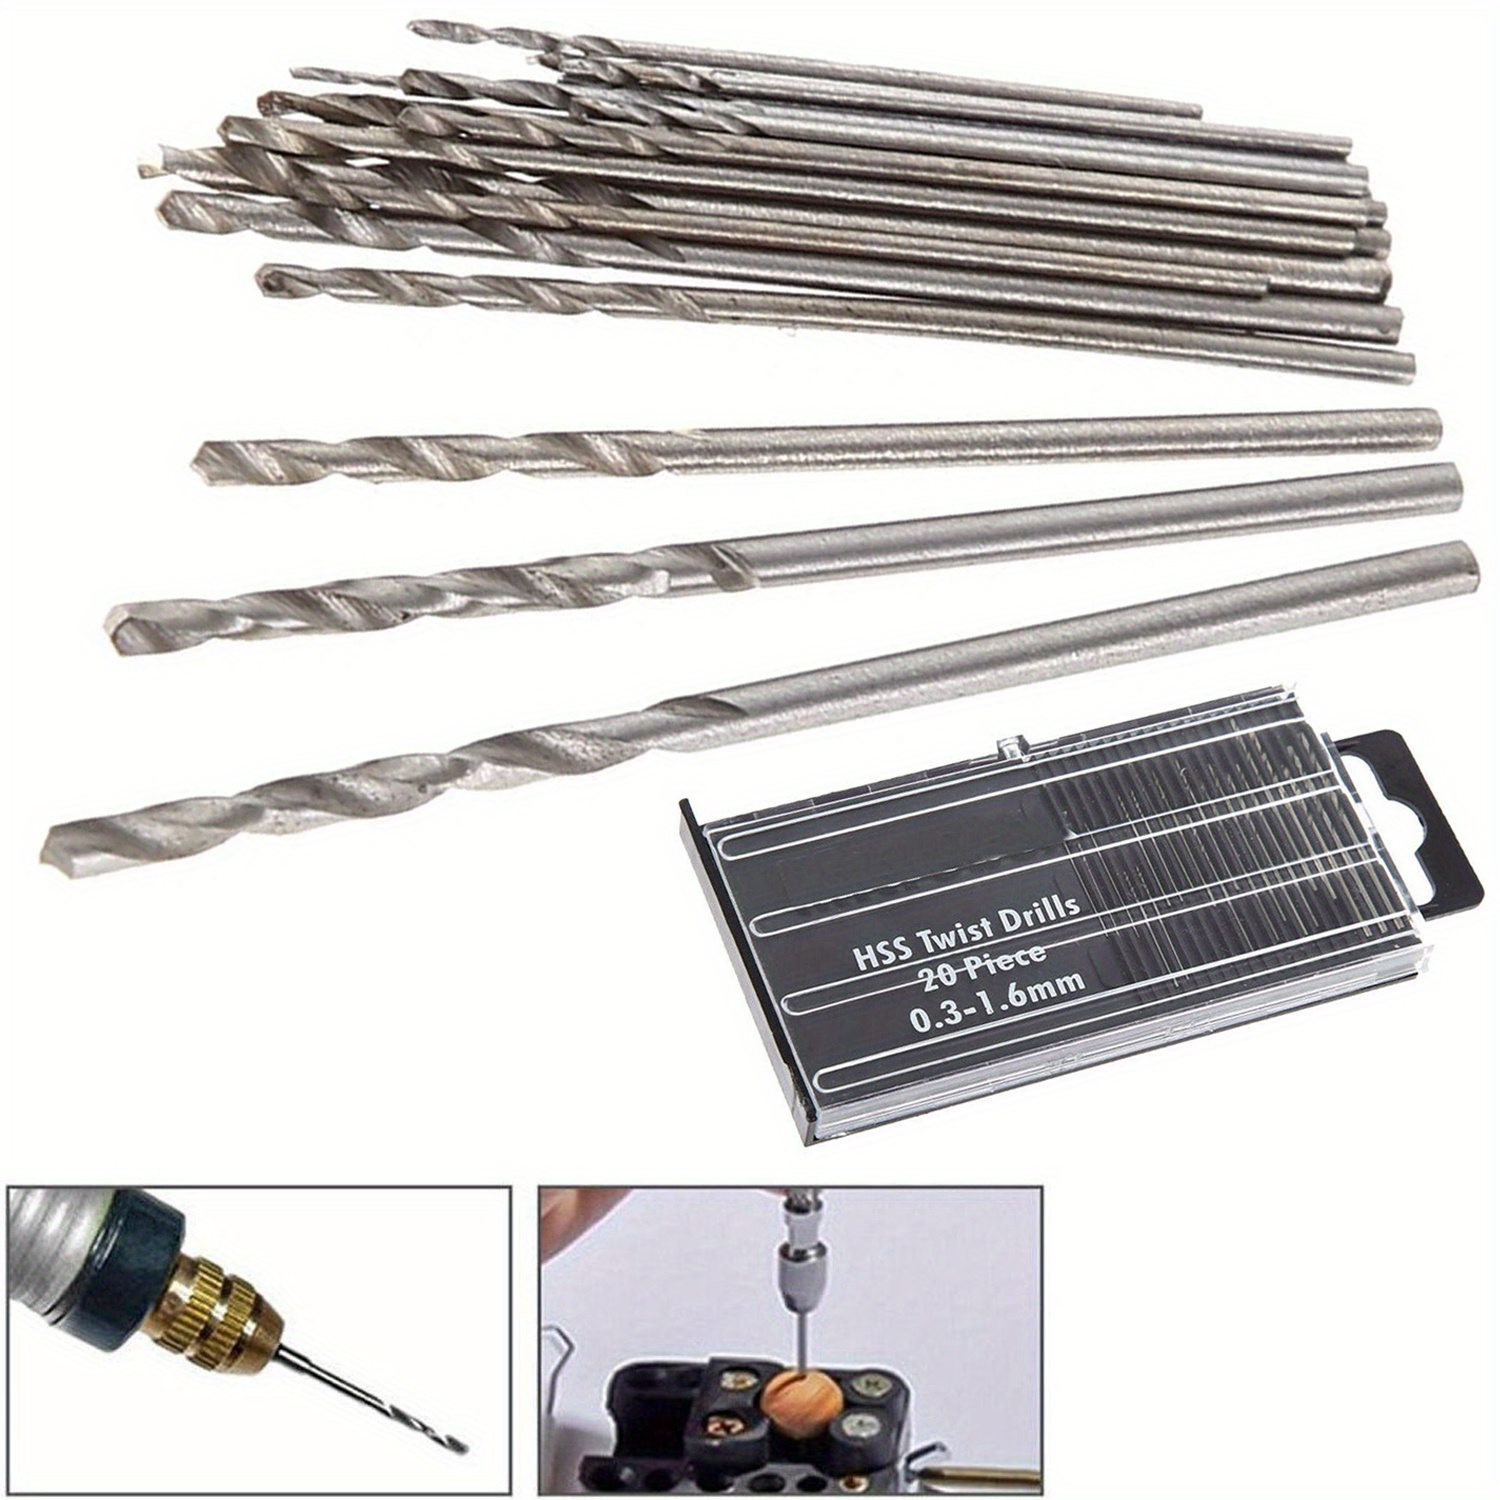 

20pcs Mini Twist Drill Micro Small Drill Bit For Model Craft Jewelry Watch Repair Electrical Drill